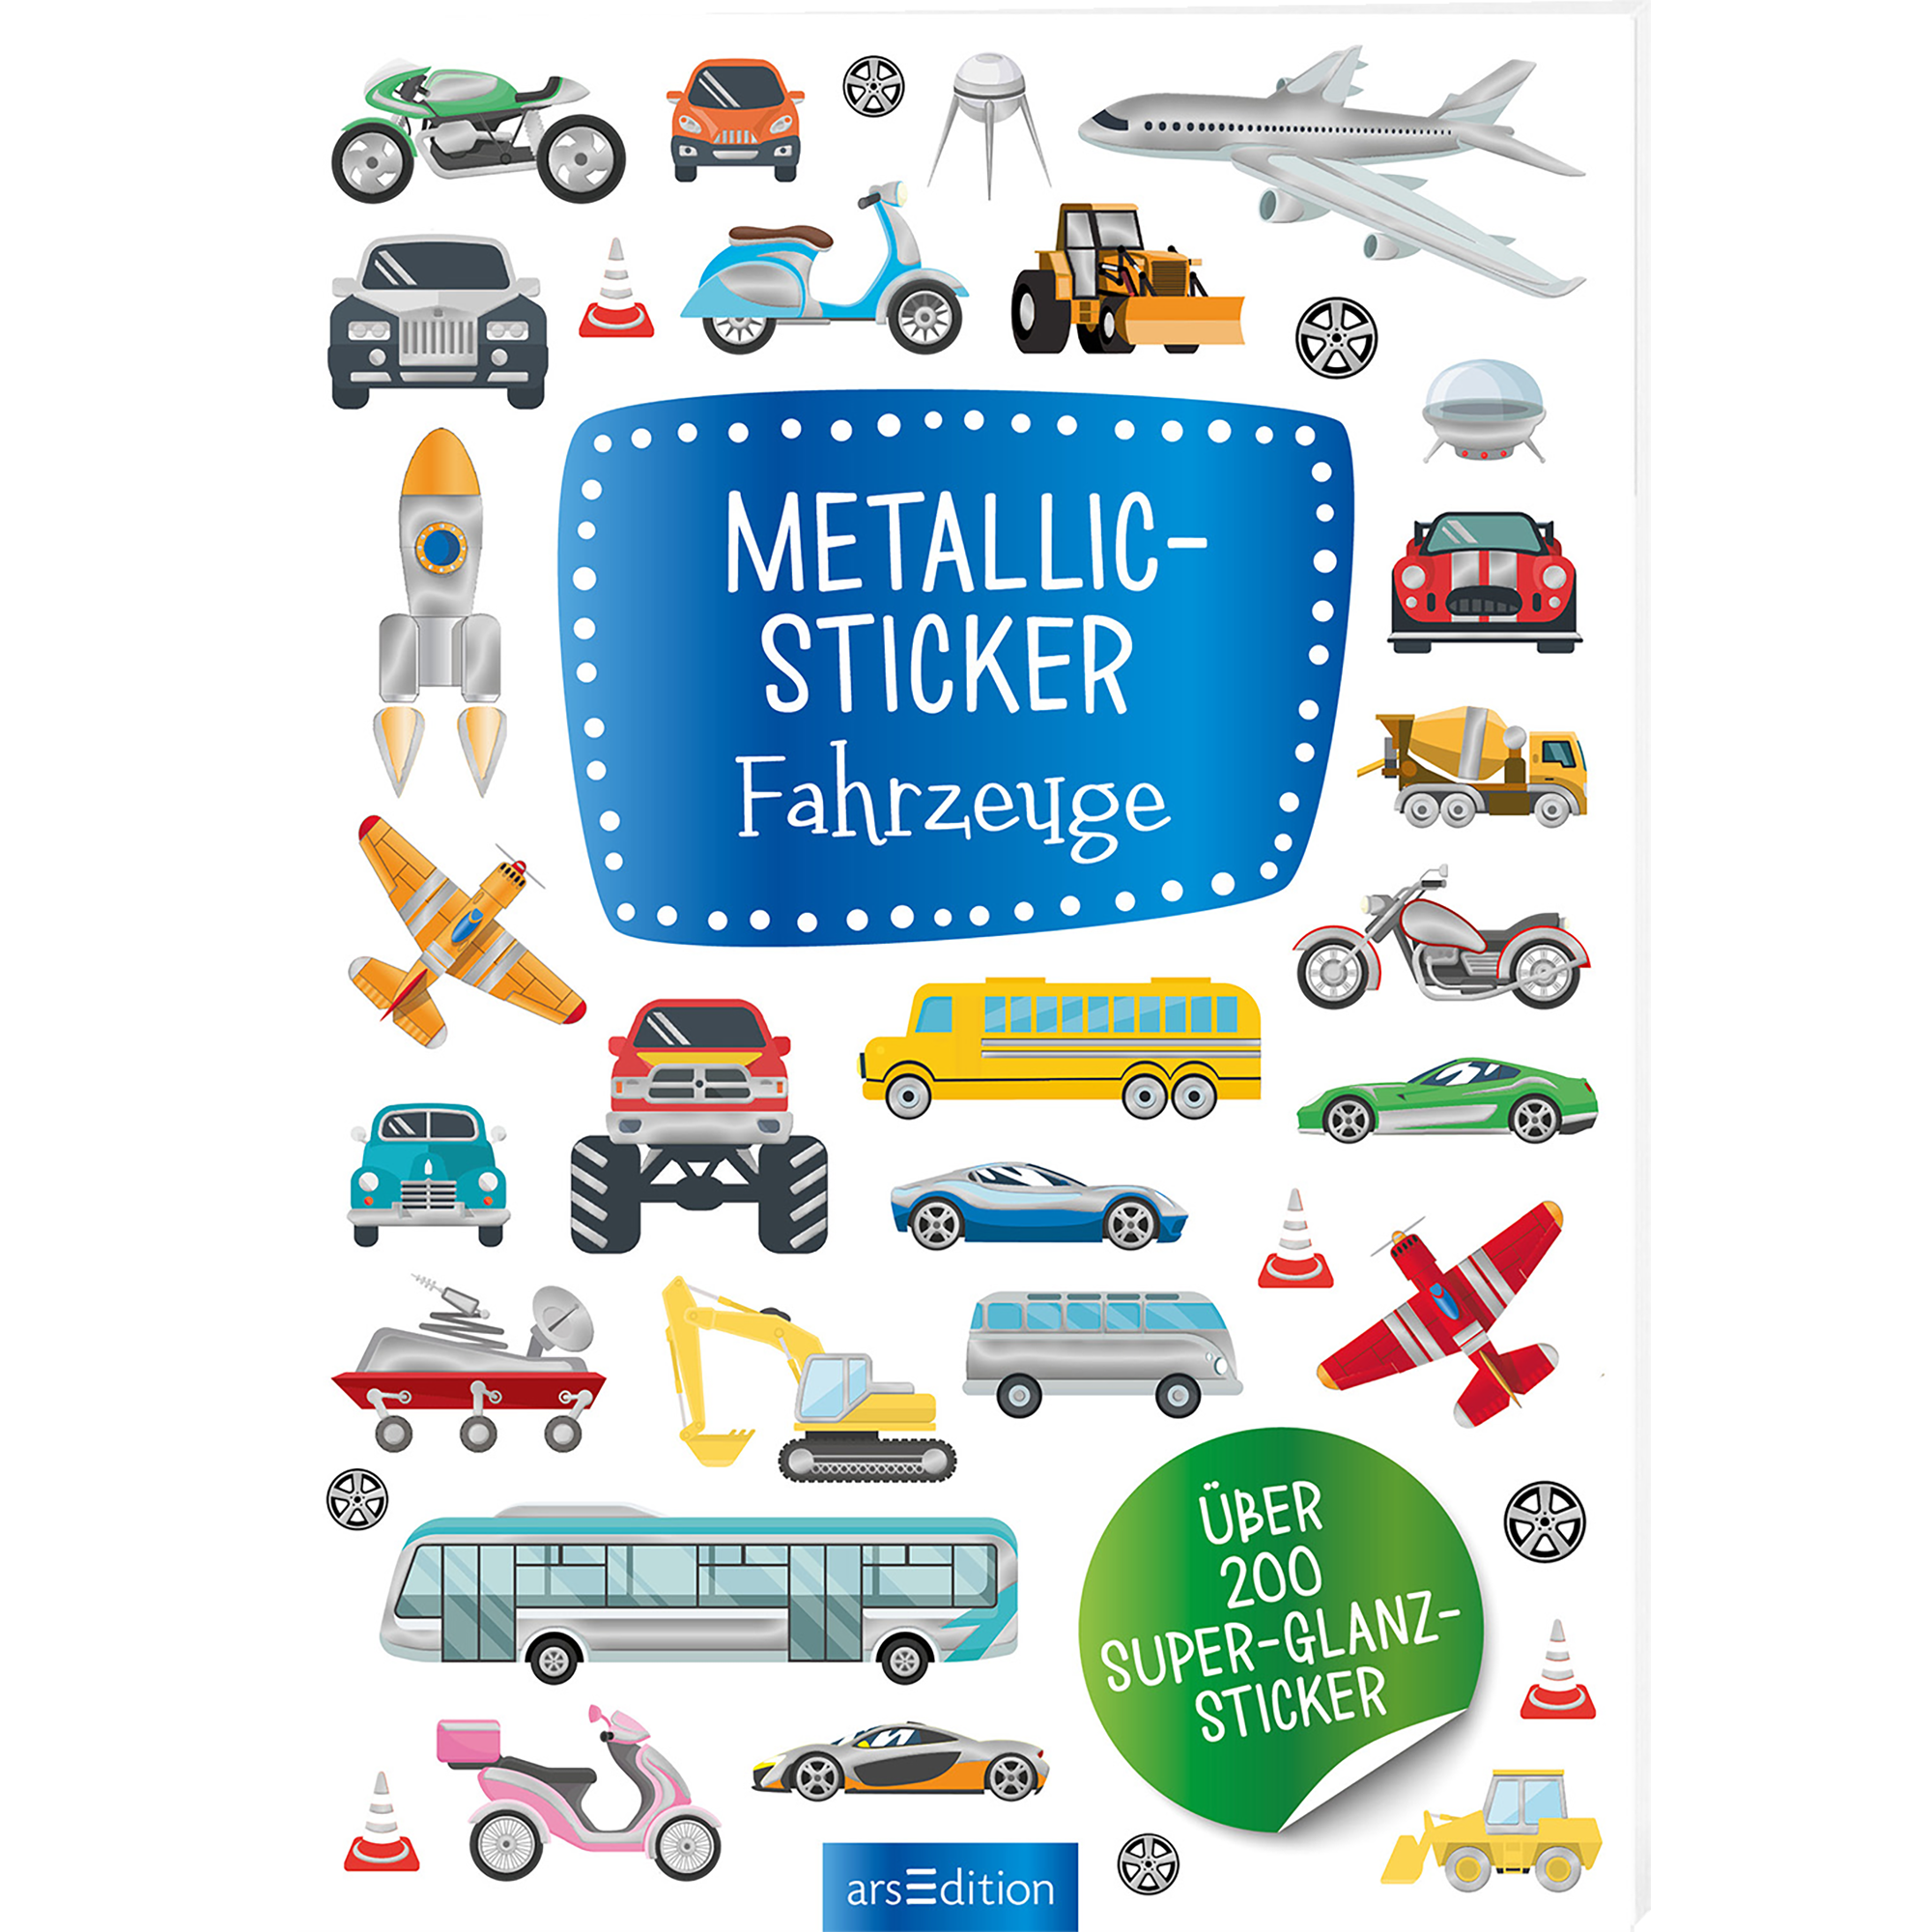 Metallic-Sticker - Fahrzeuge arsEdition 2000583323600 1